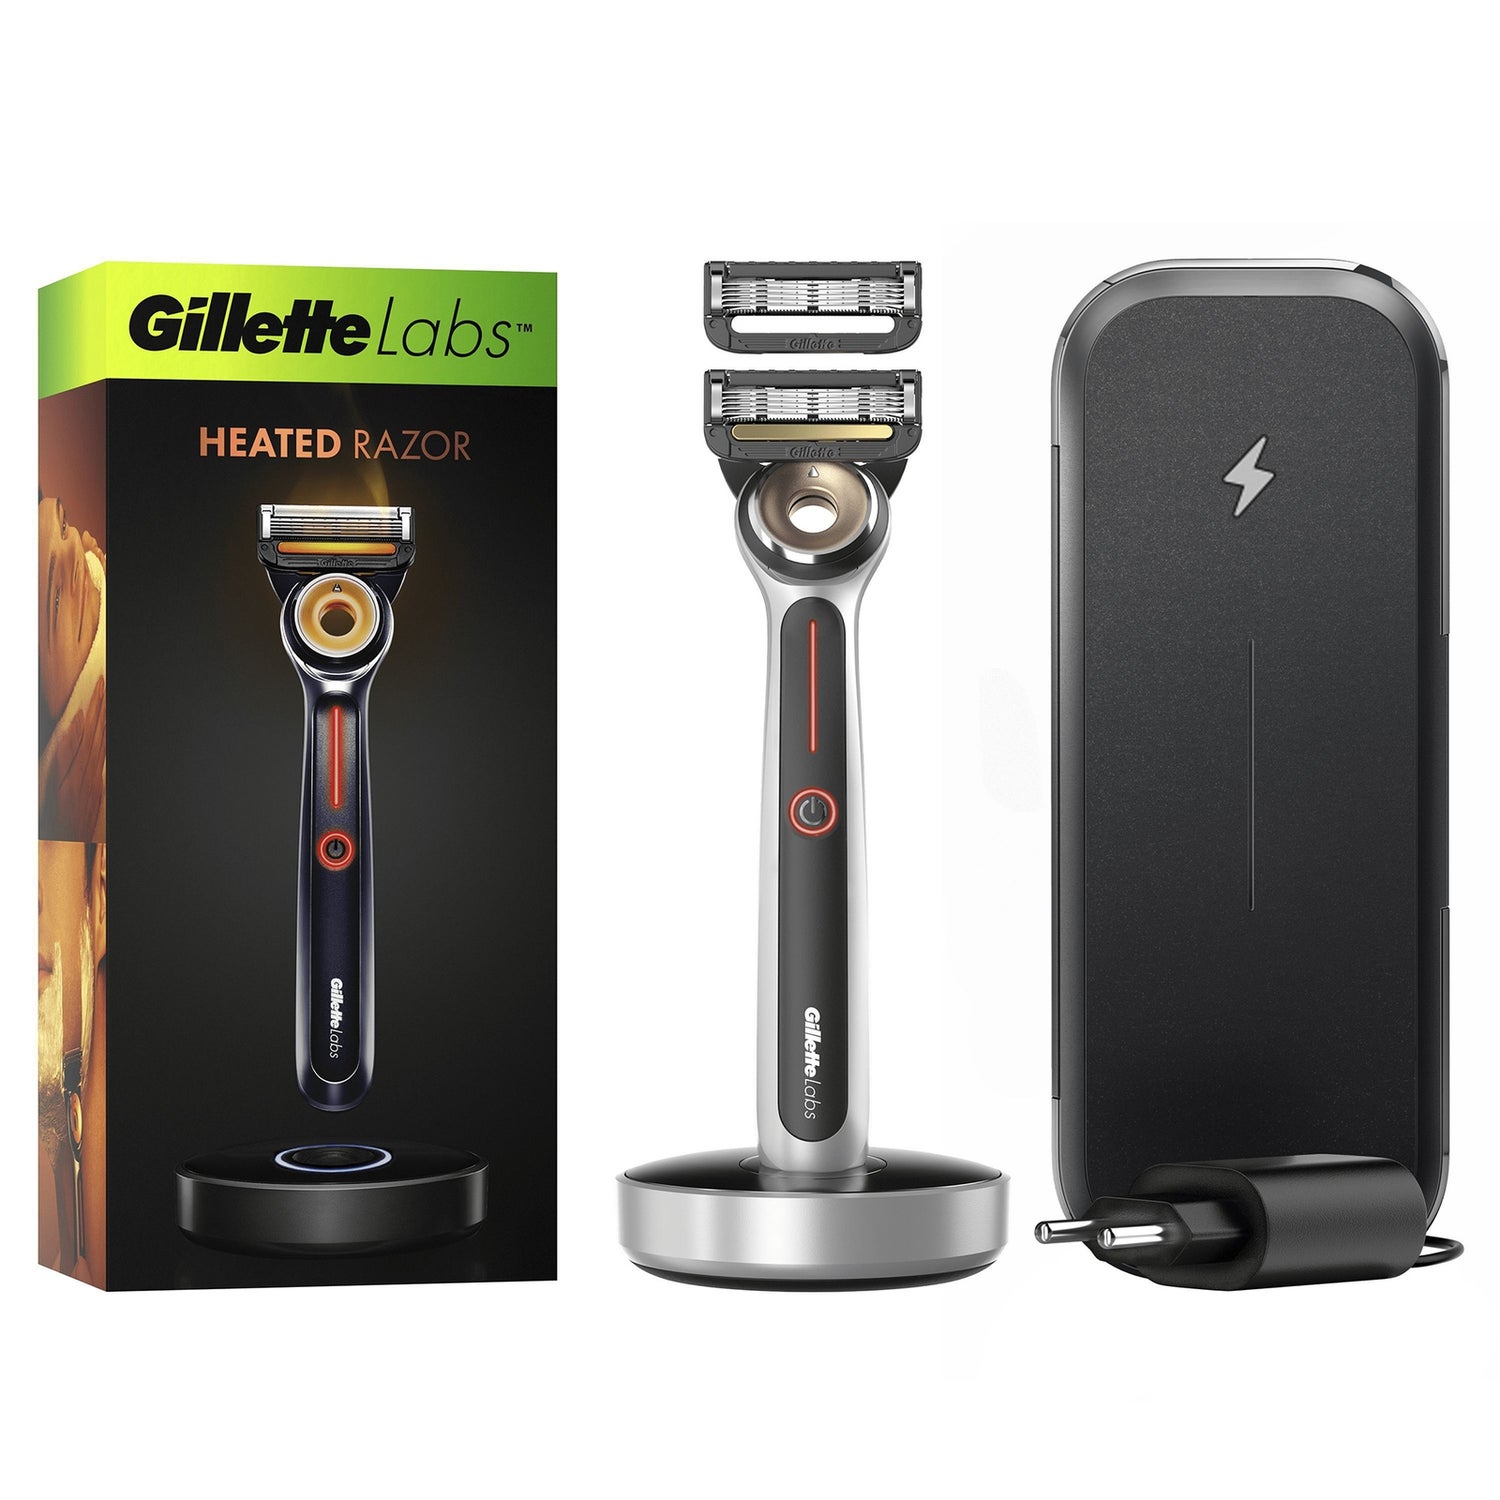 Gillette GilletteLabs Heated Razor Travel Kit